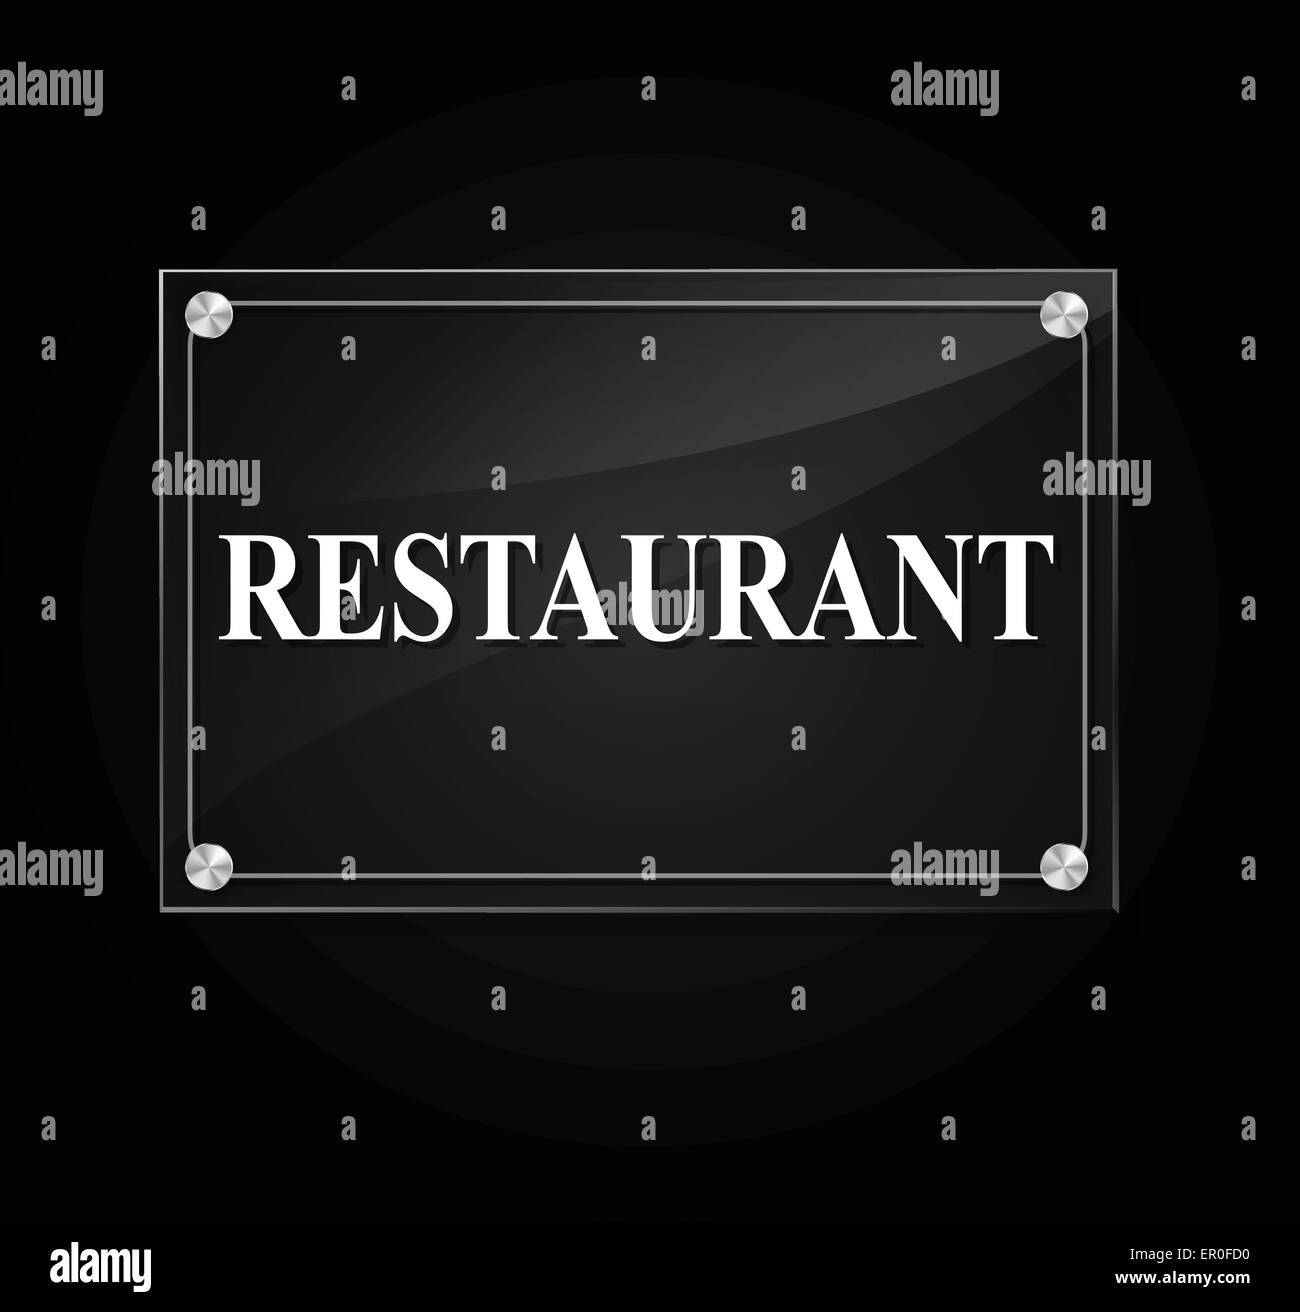 illustration of transparent restaurant sign on black background Stock Vector